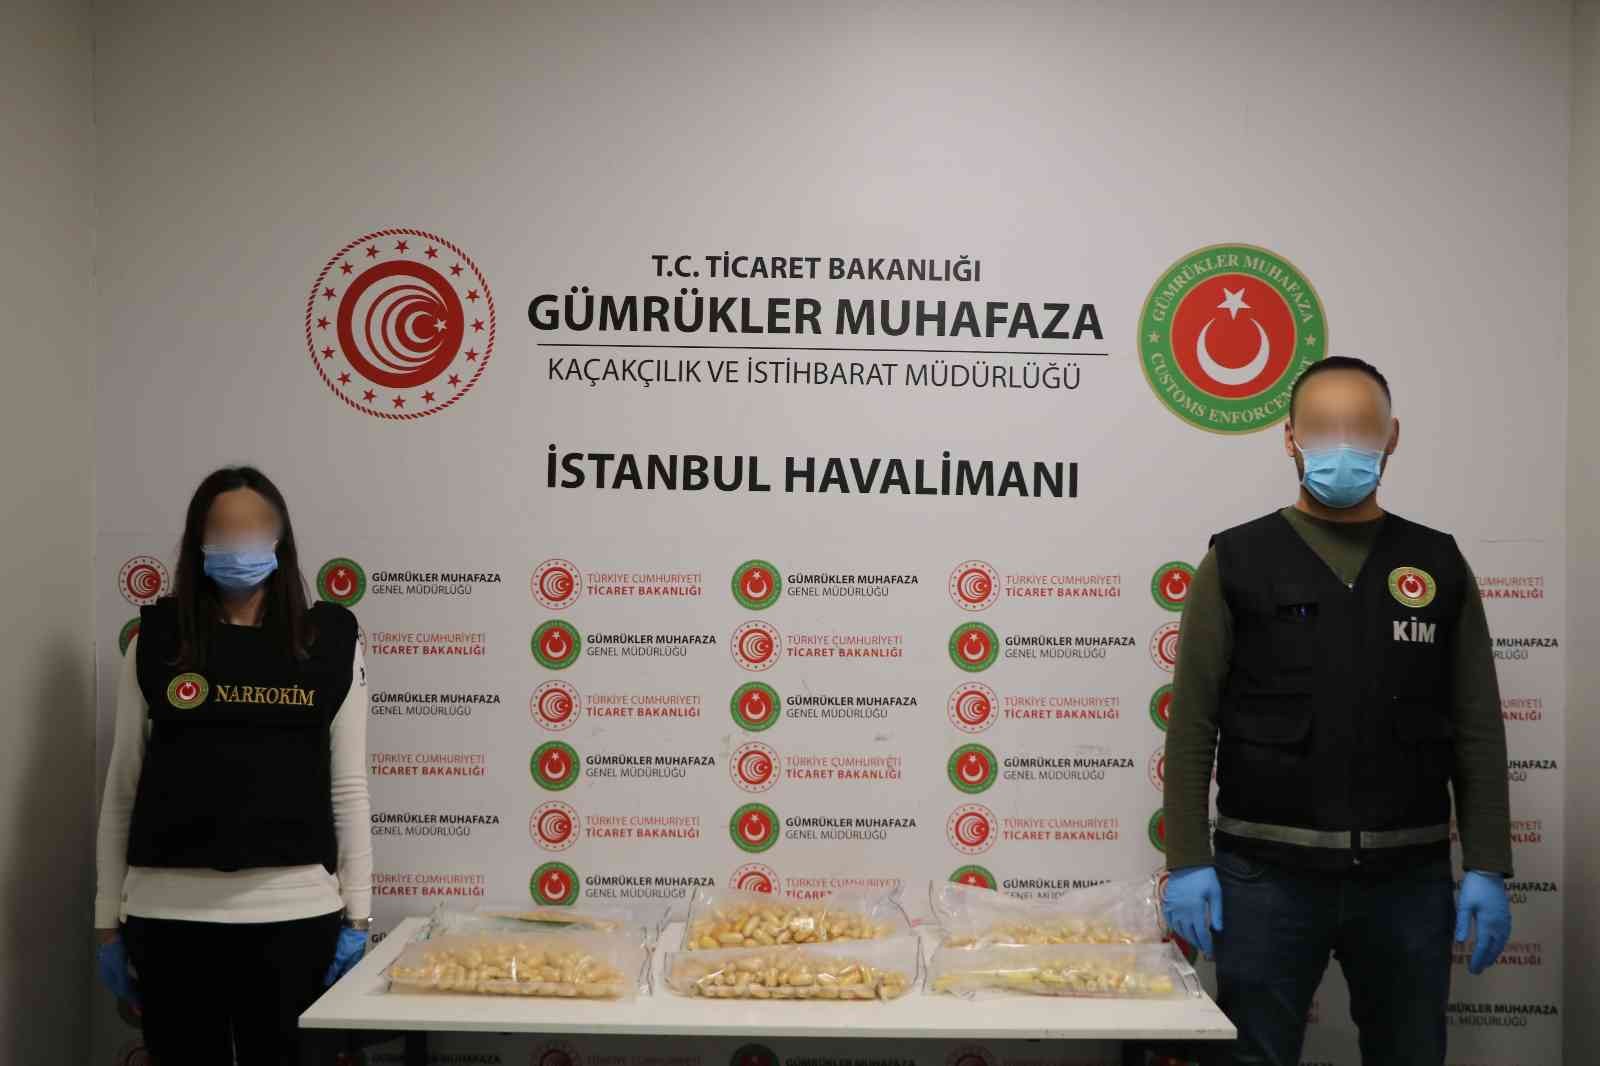 İstanbul Havalimanı’nda gerçekleştirilen iki ayrı uyuşturucu operasyonunda 11 kilo kokain ele geçirildi. Biri organizatör, yedisi kurye olmak ...